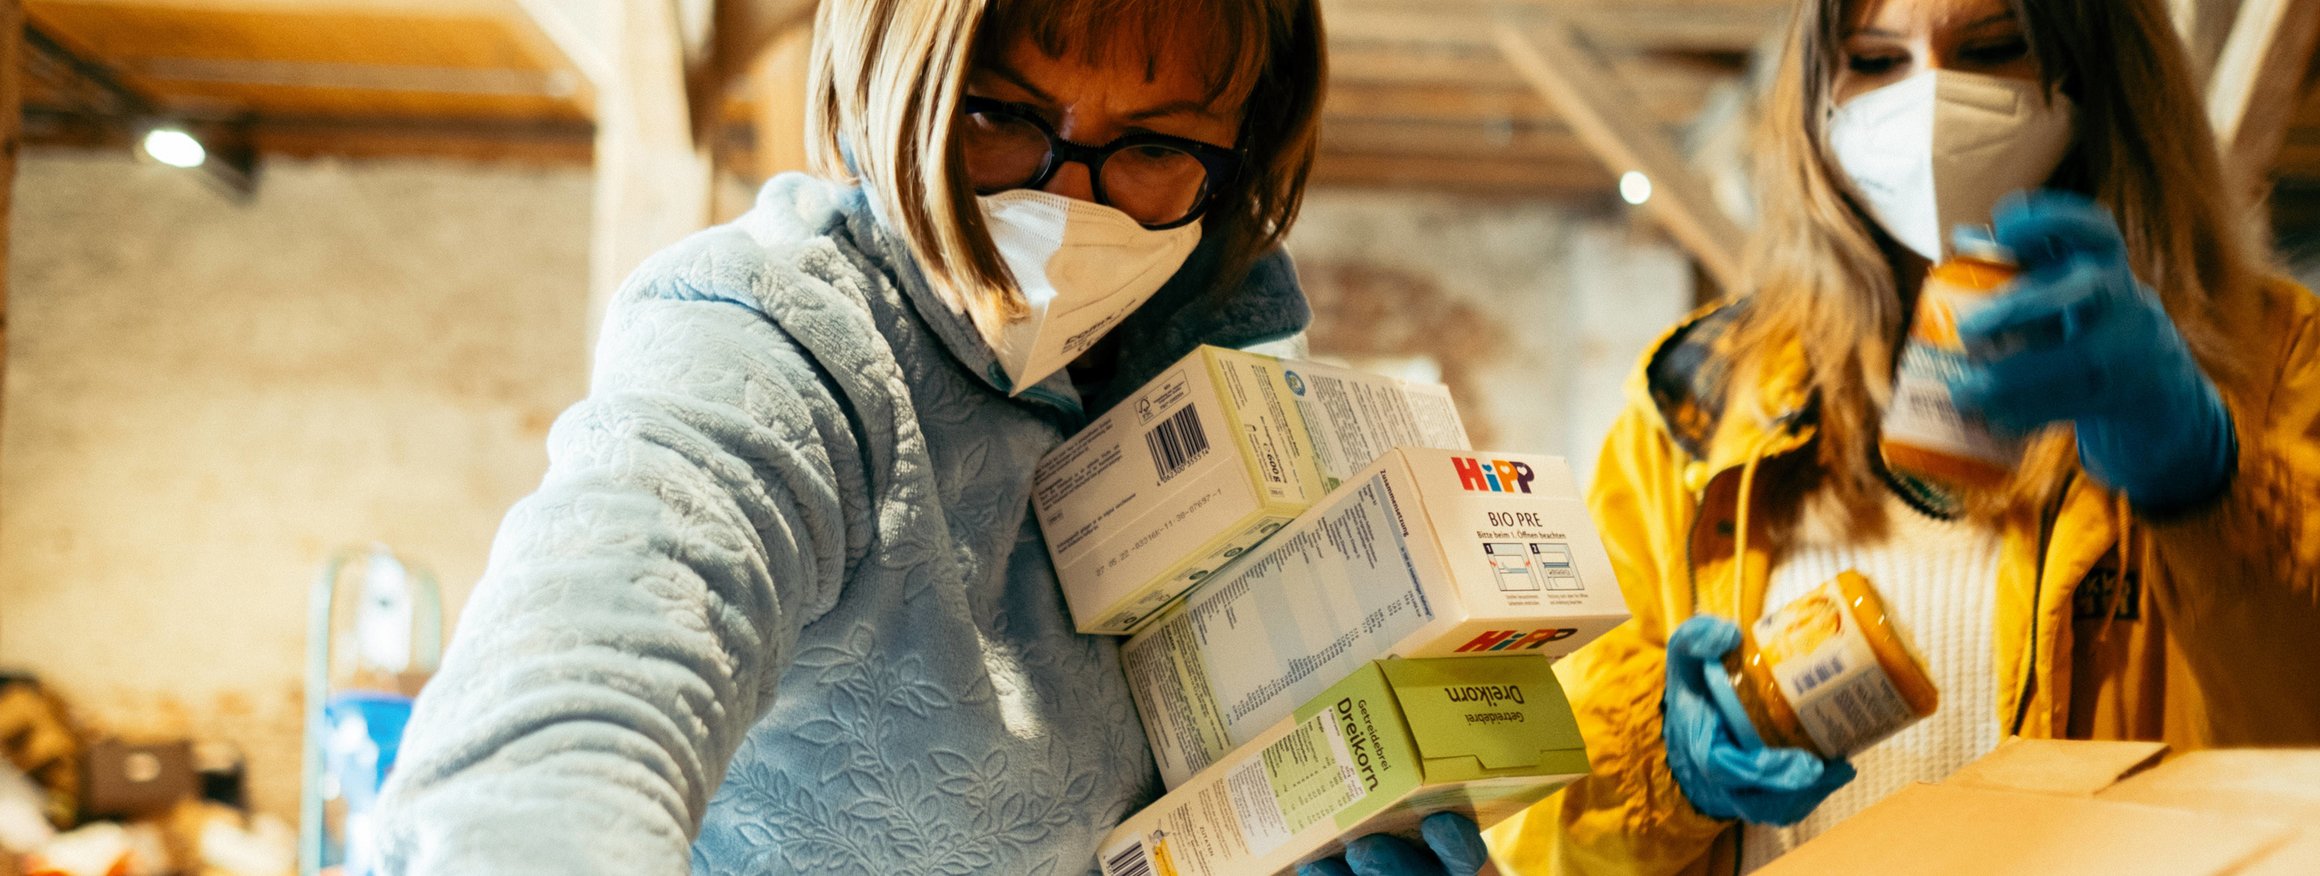 Freiwillige Helfer in Fürstenfeldbruck packen Kartons für Betroffene des Ukraine-Kriegs